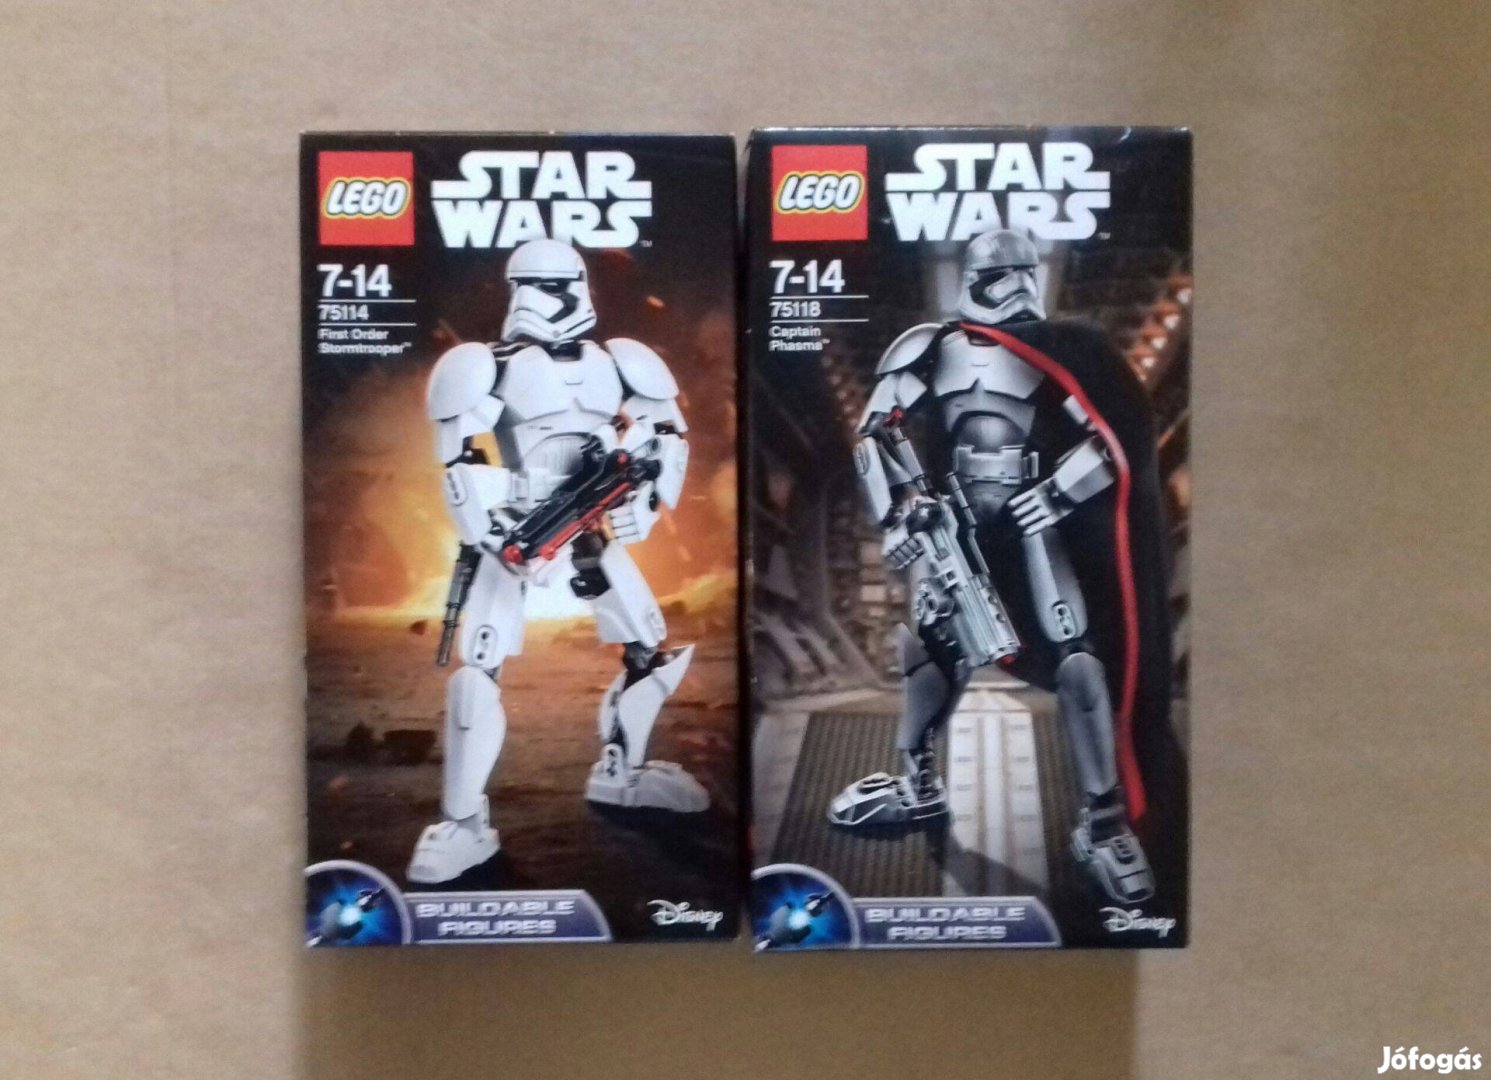 Ébredő Erő bontatlan Star Wars LEGO 75114 + 75118 Phasma Fox.az árban